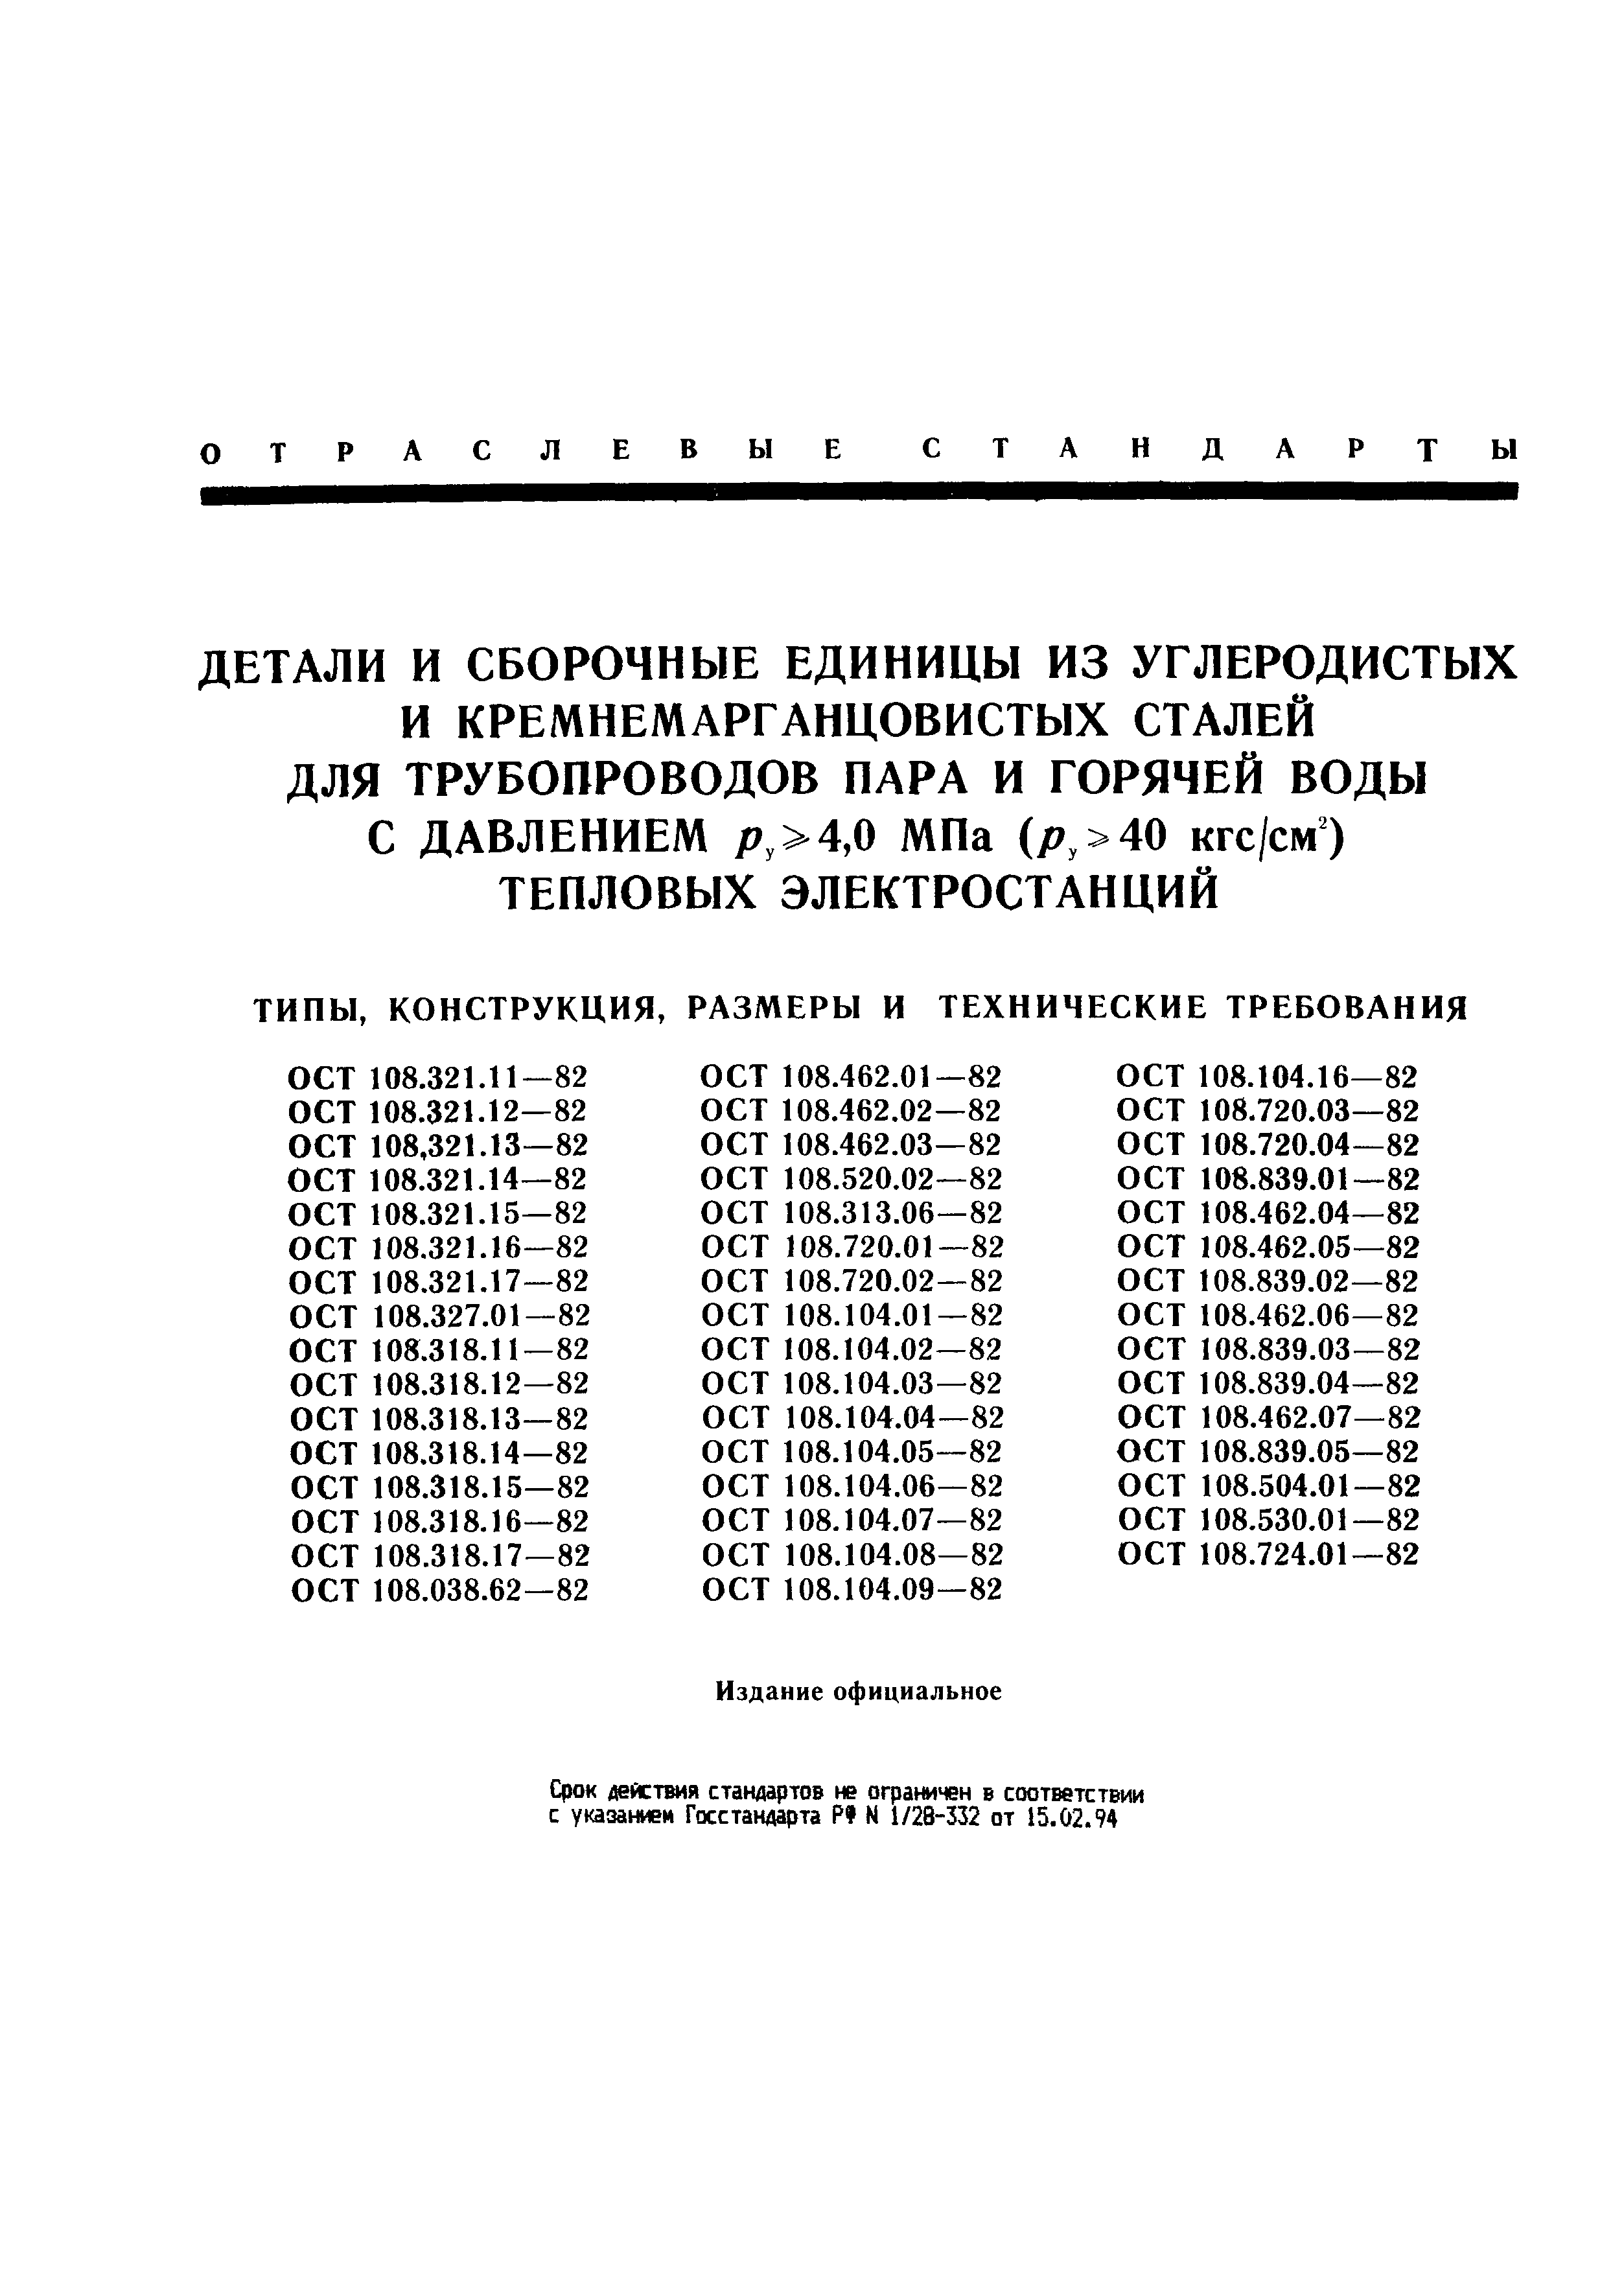 ОСТ 108.104.08-82